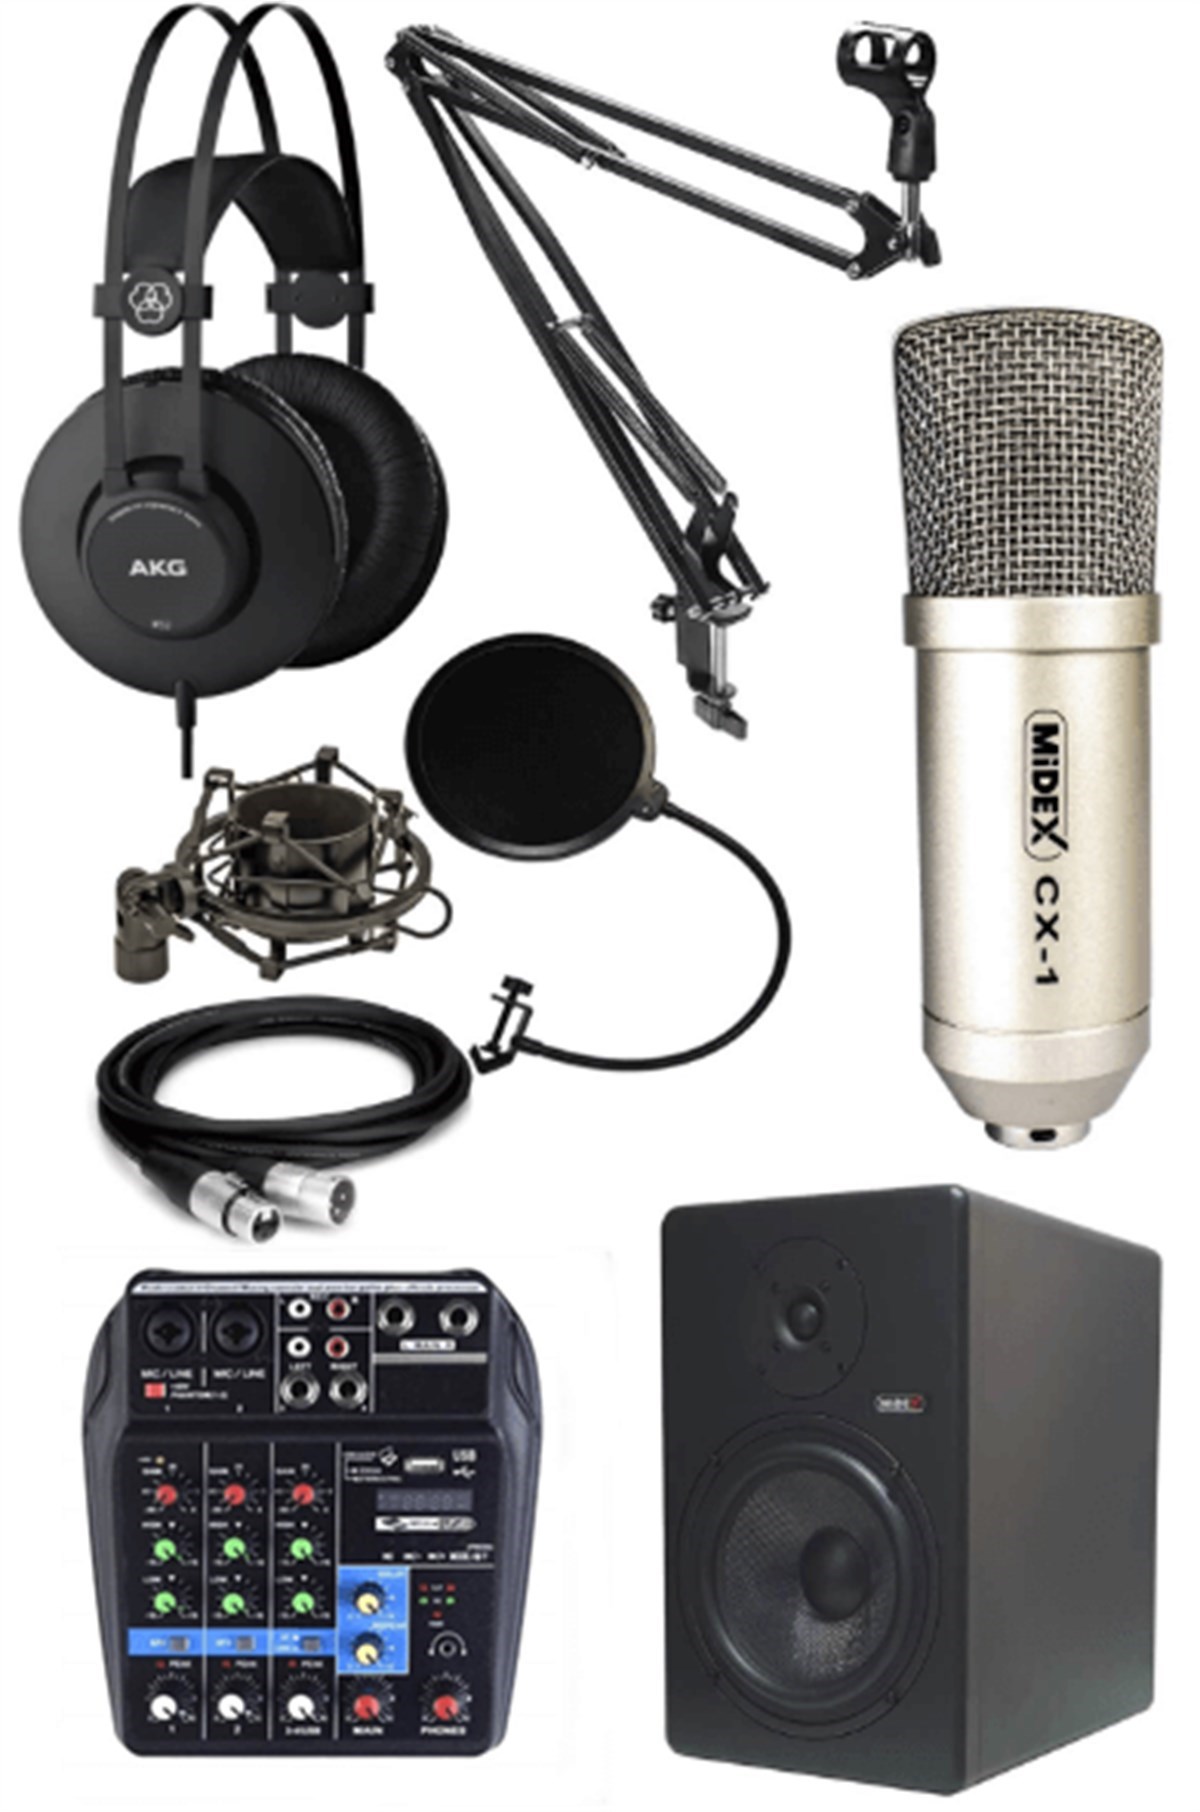 Studio Ses Kayıt Ekipman Seti Silver Paket-2 en ucuz fiyatları